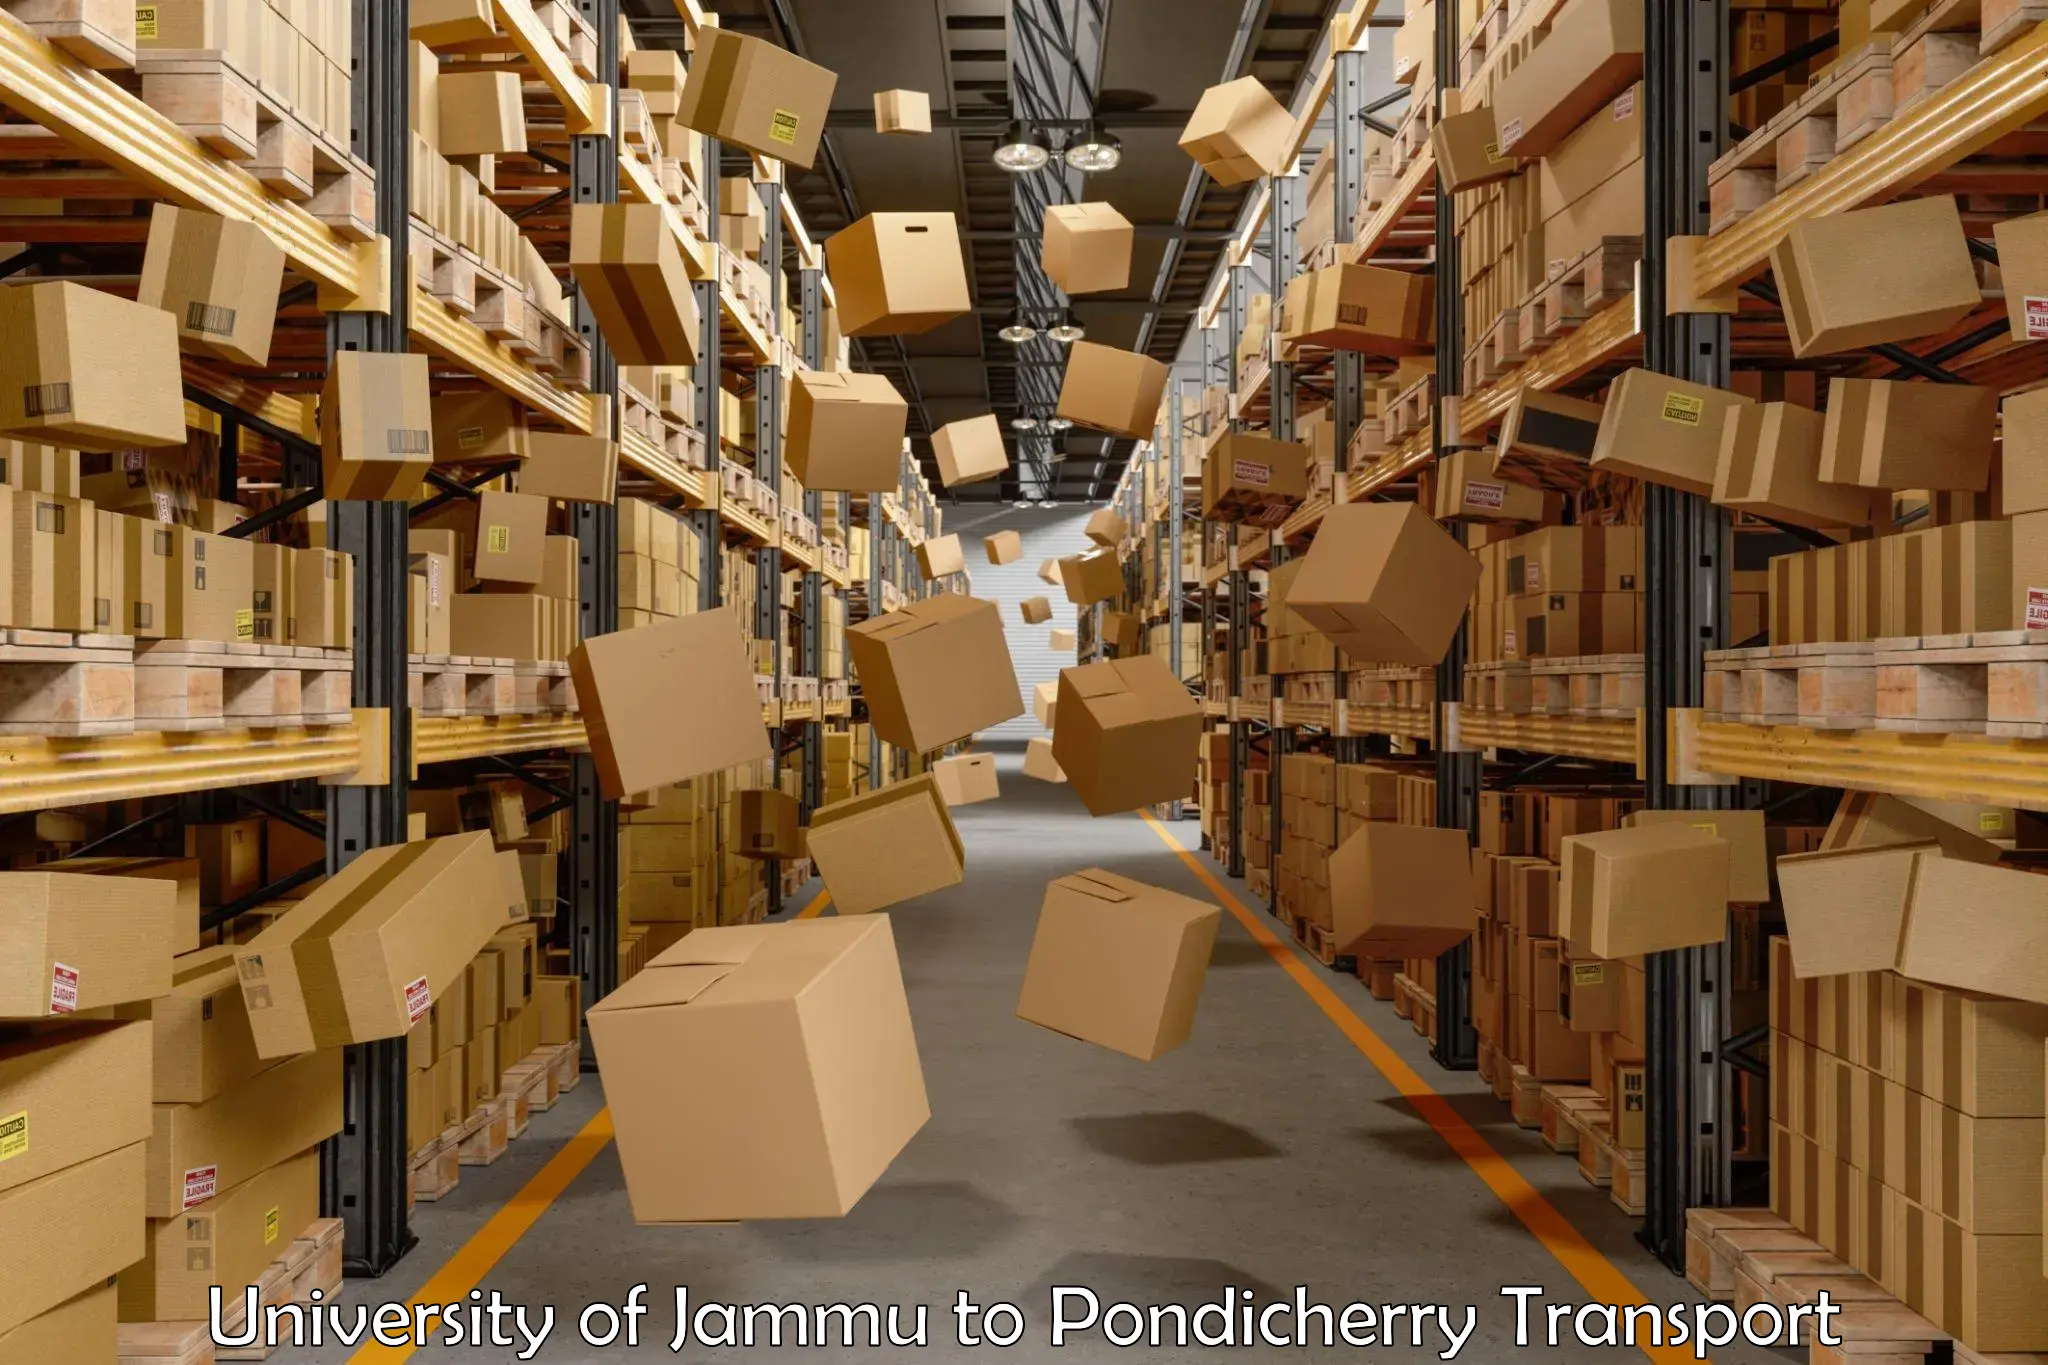 Daily parcel service transport University of Jammu to Pondicherry University